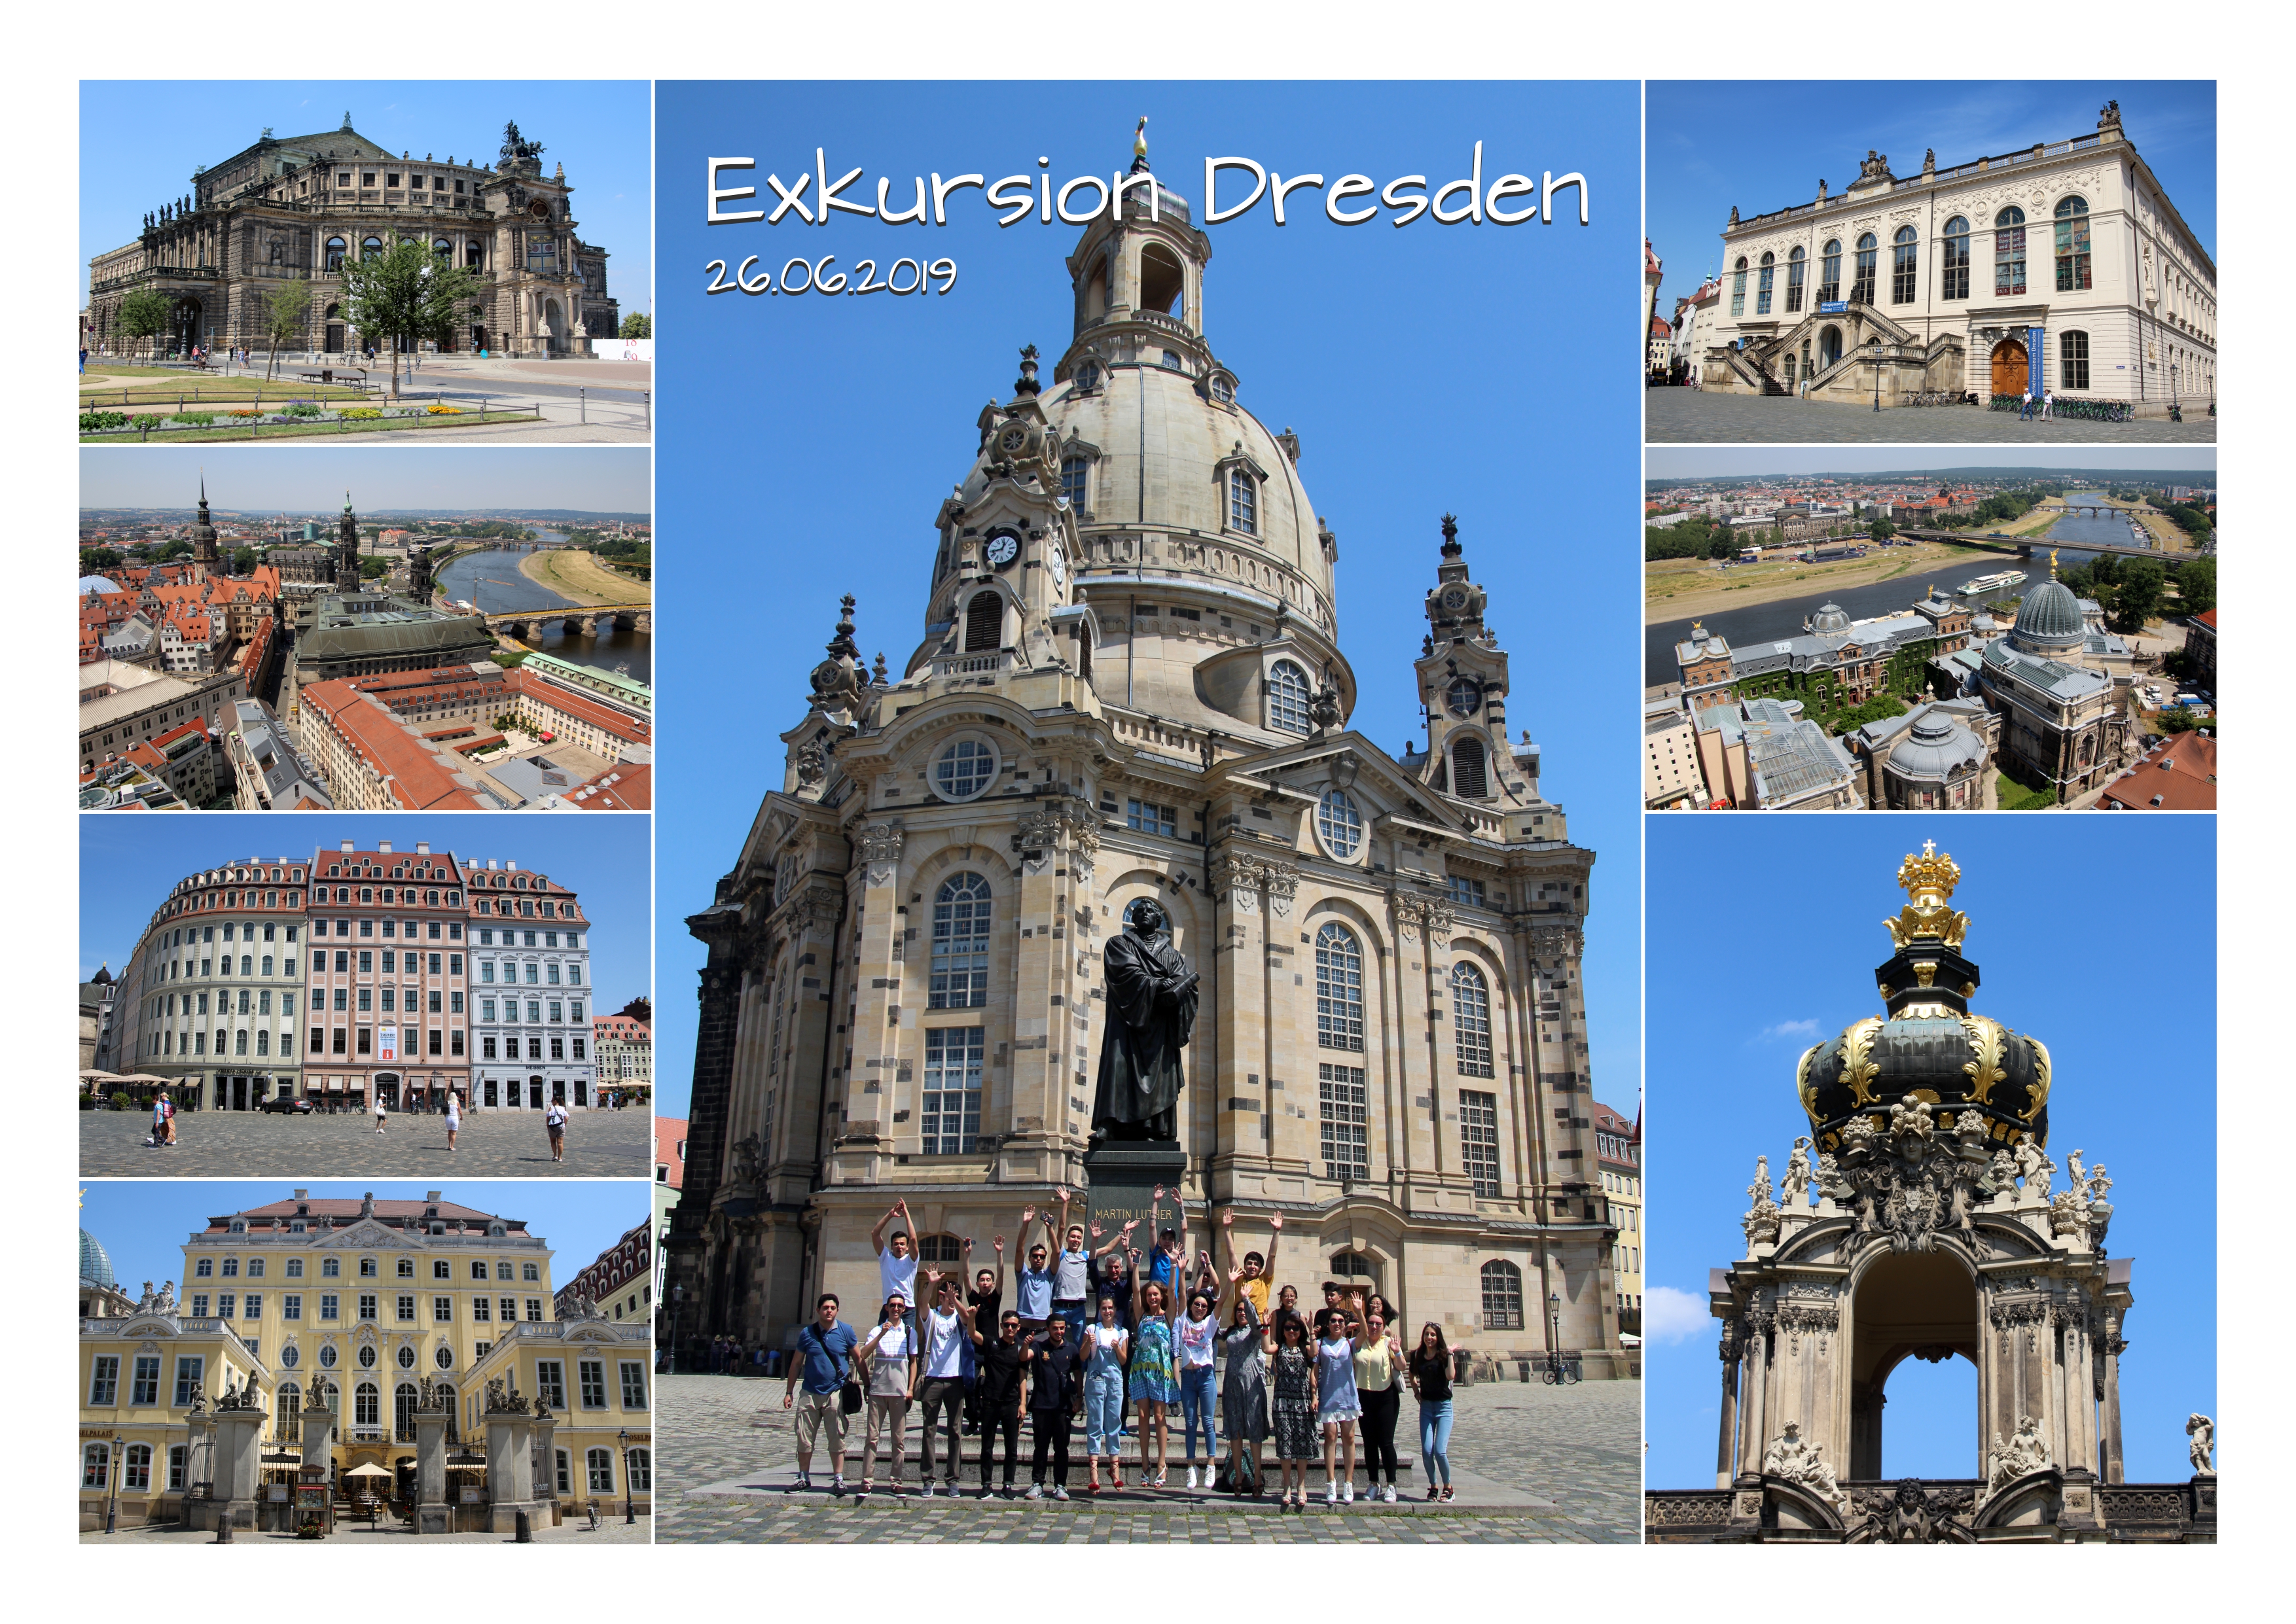 Fotocollage: Exkursion nach Dresden. Impressionen mit historischen Bauwerken.